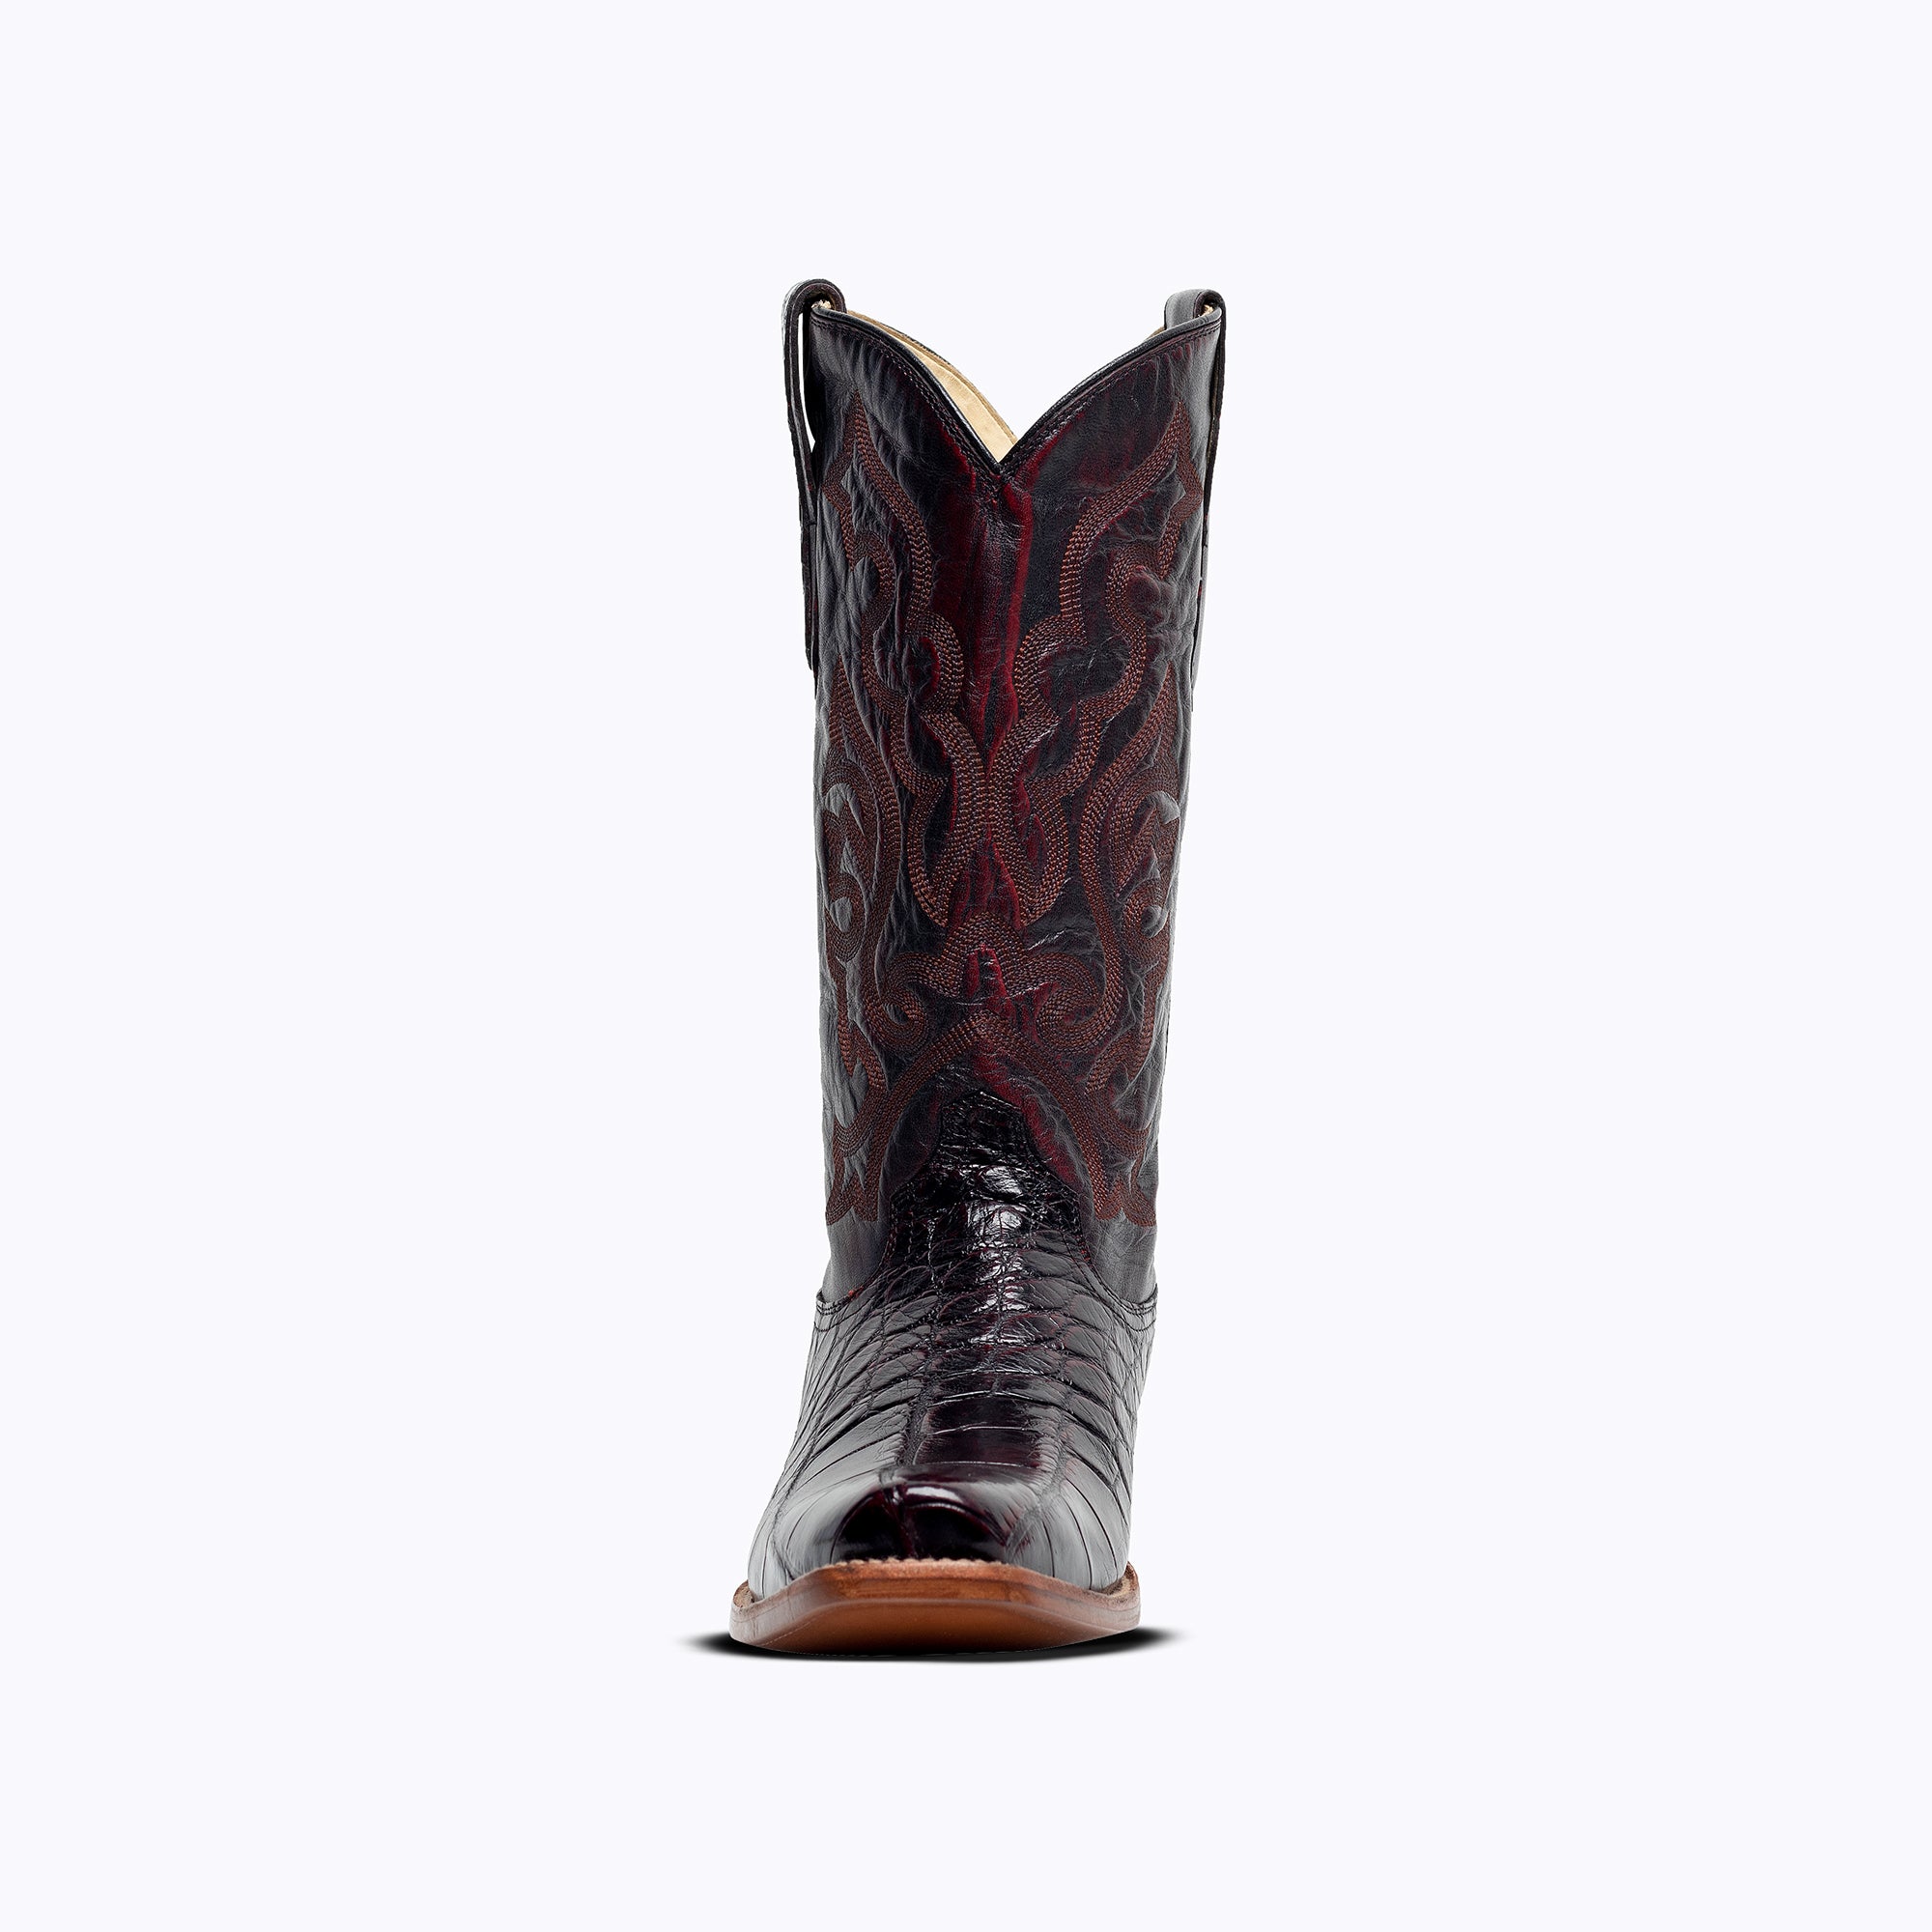 Dallas American Alligator Boot - Capitan Boots